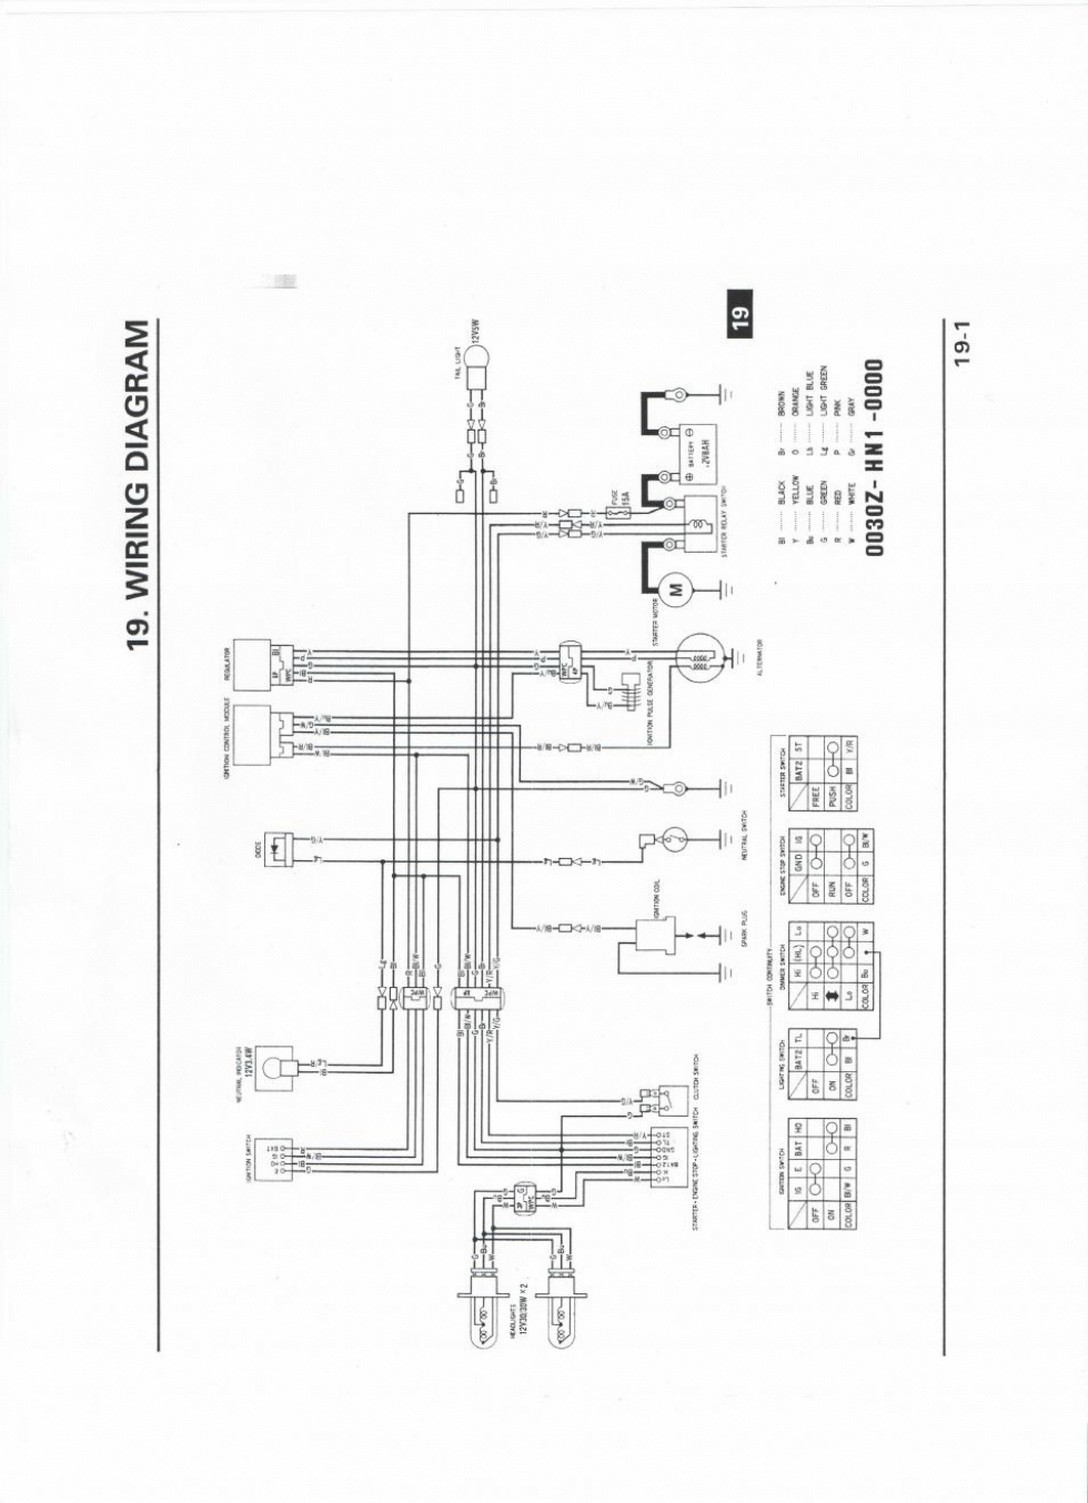 original honda 400ex wiring diagram